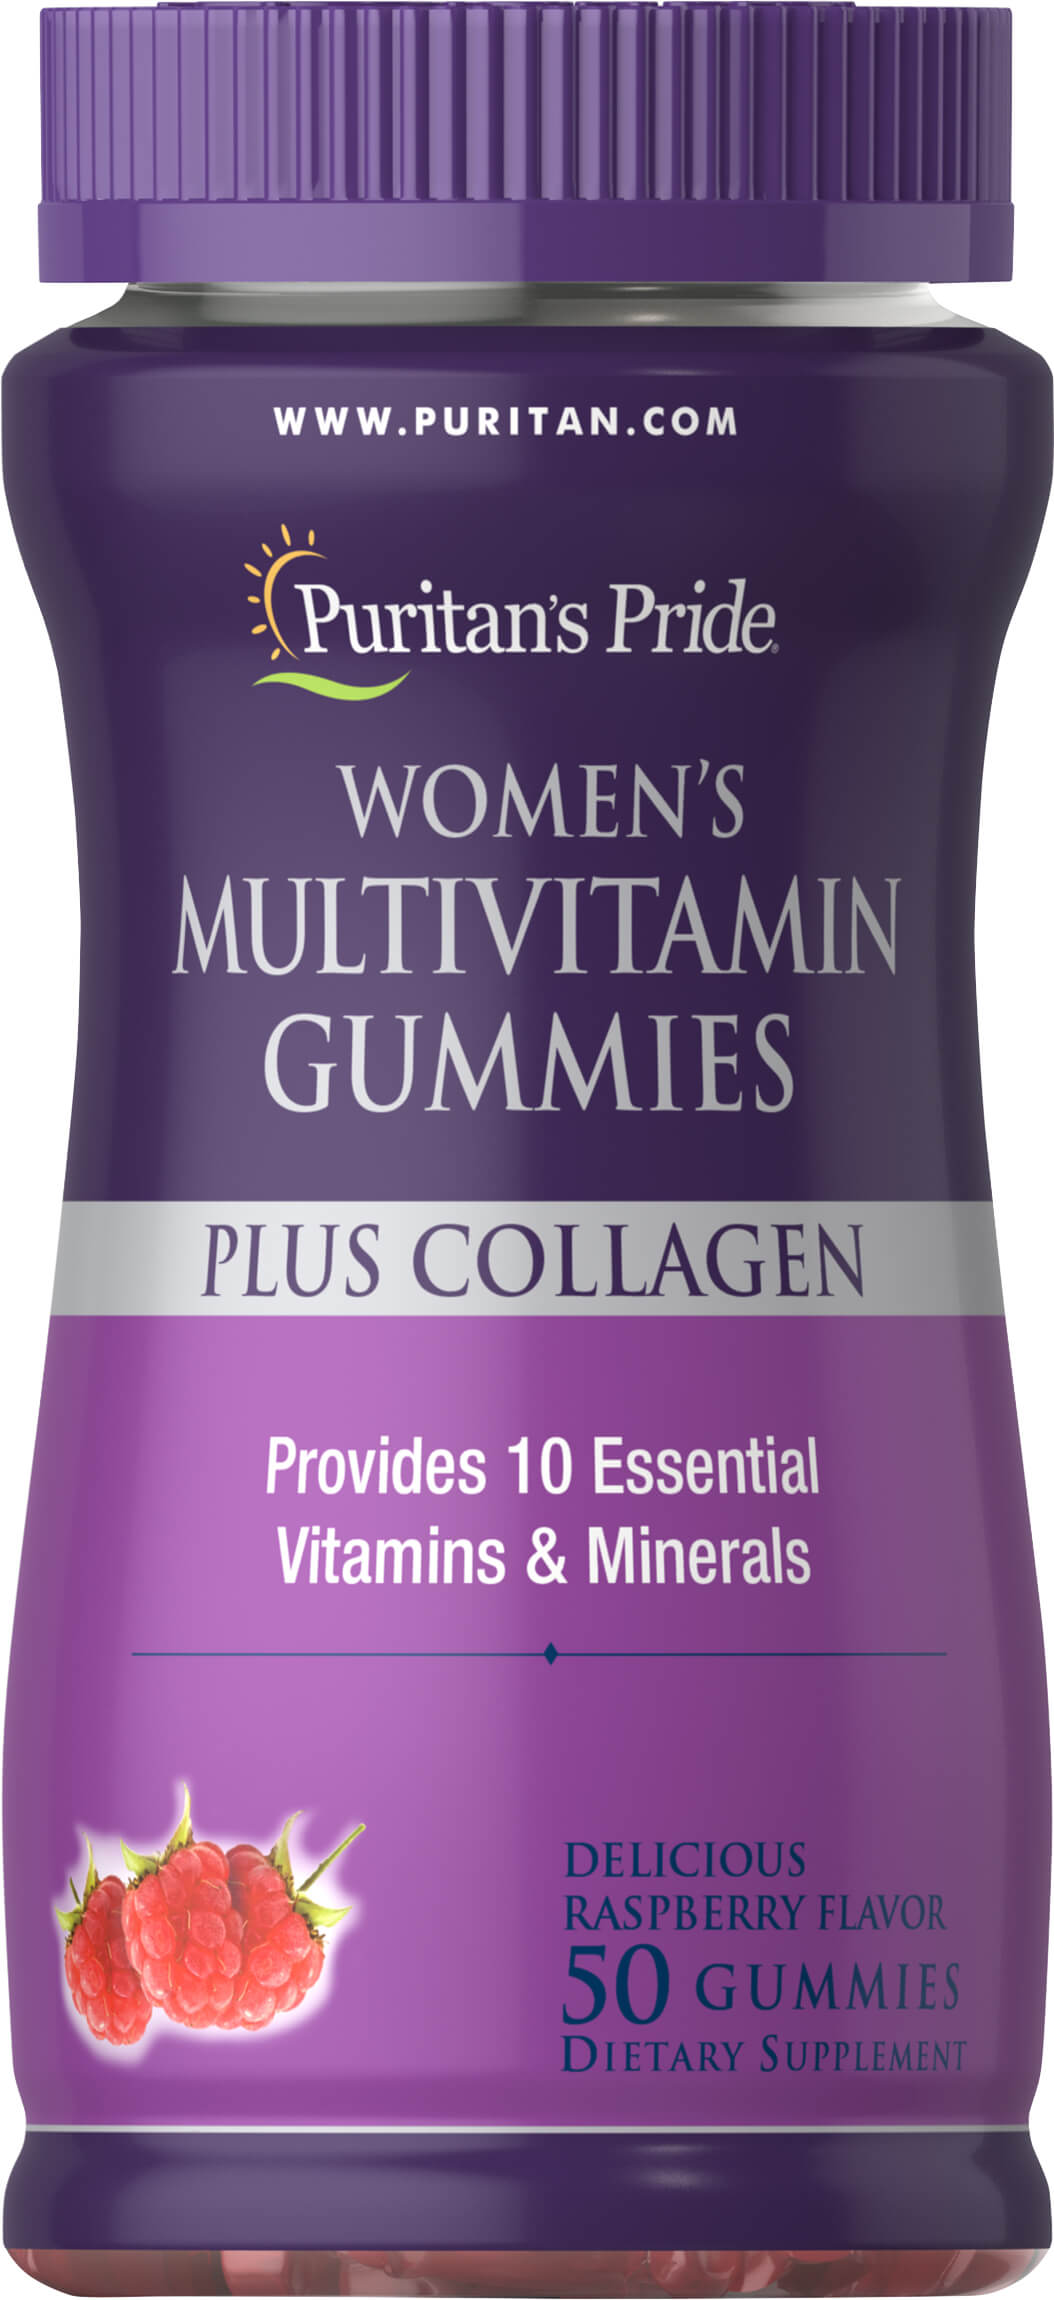 Women's Multivitamin Gummies Plus Collagen